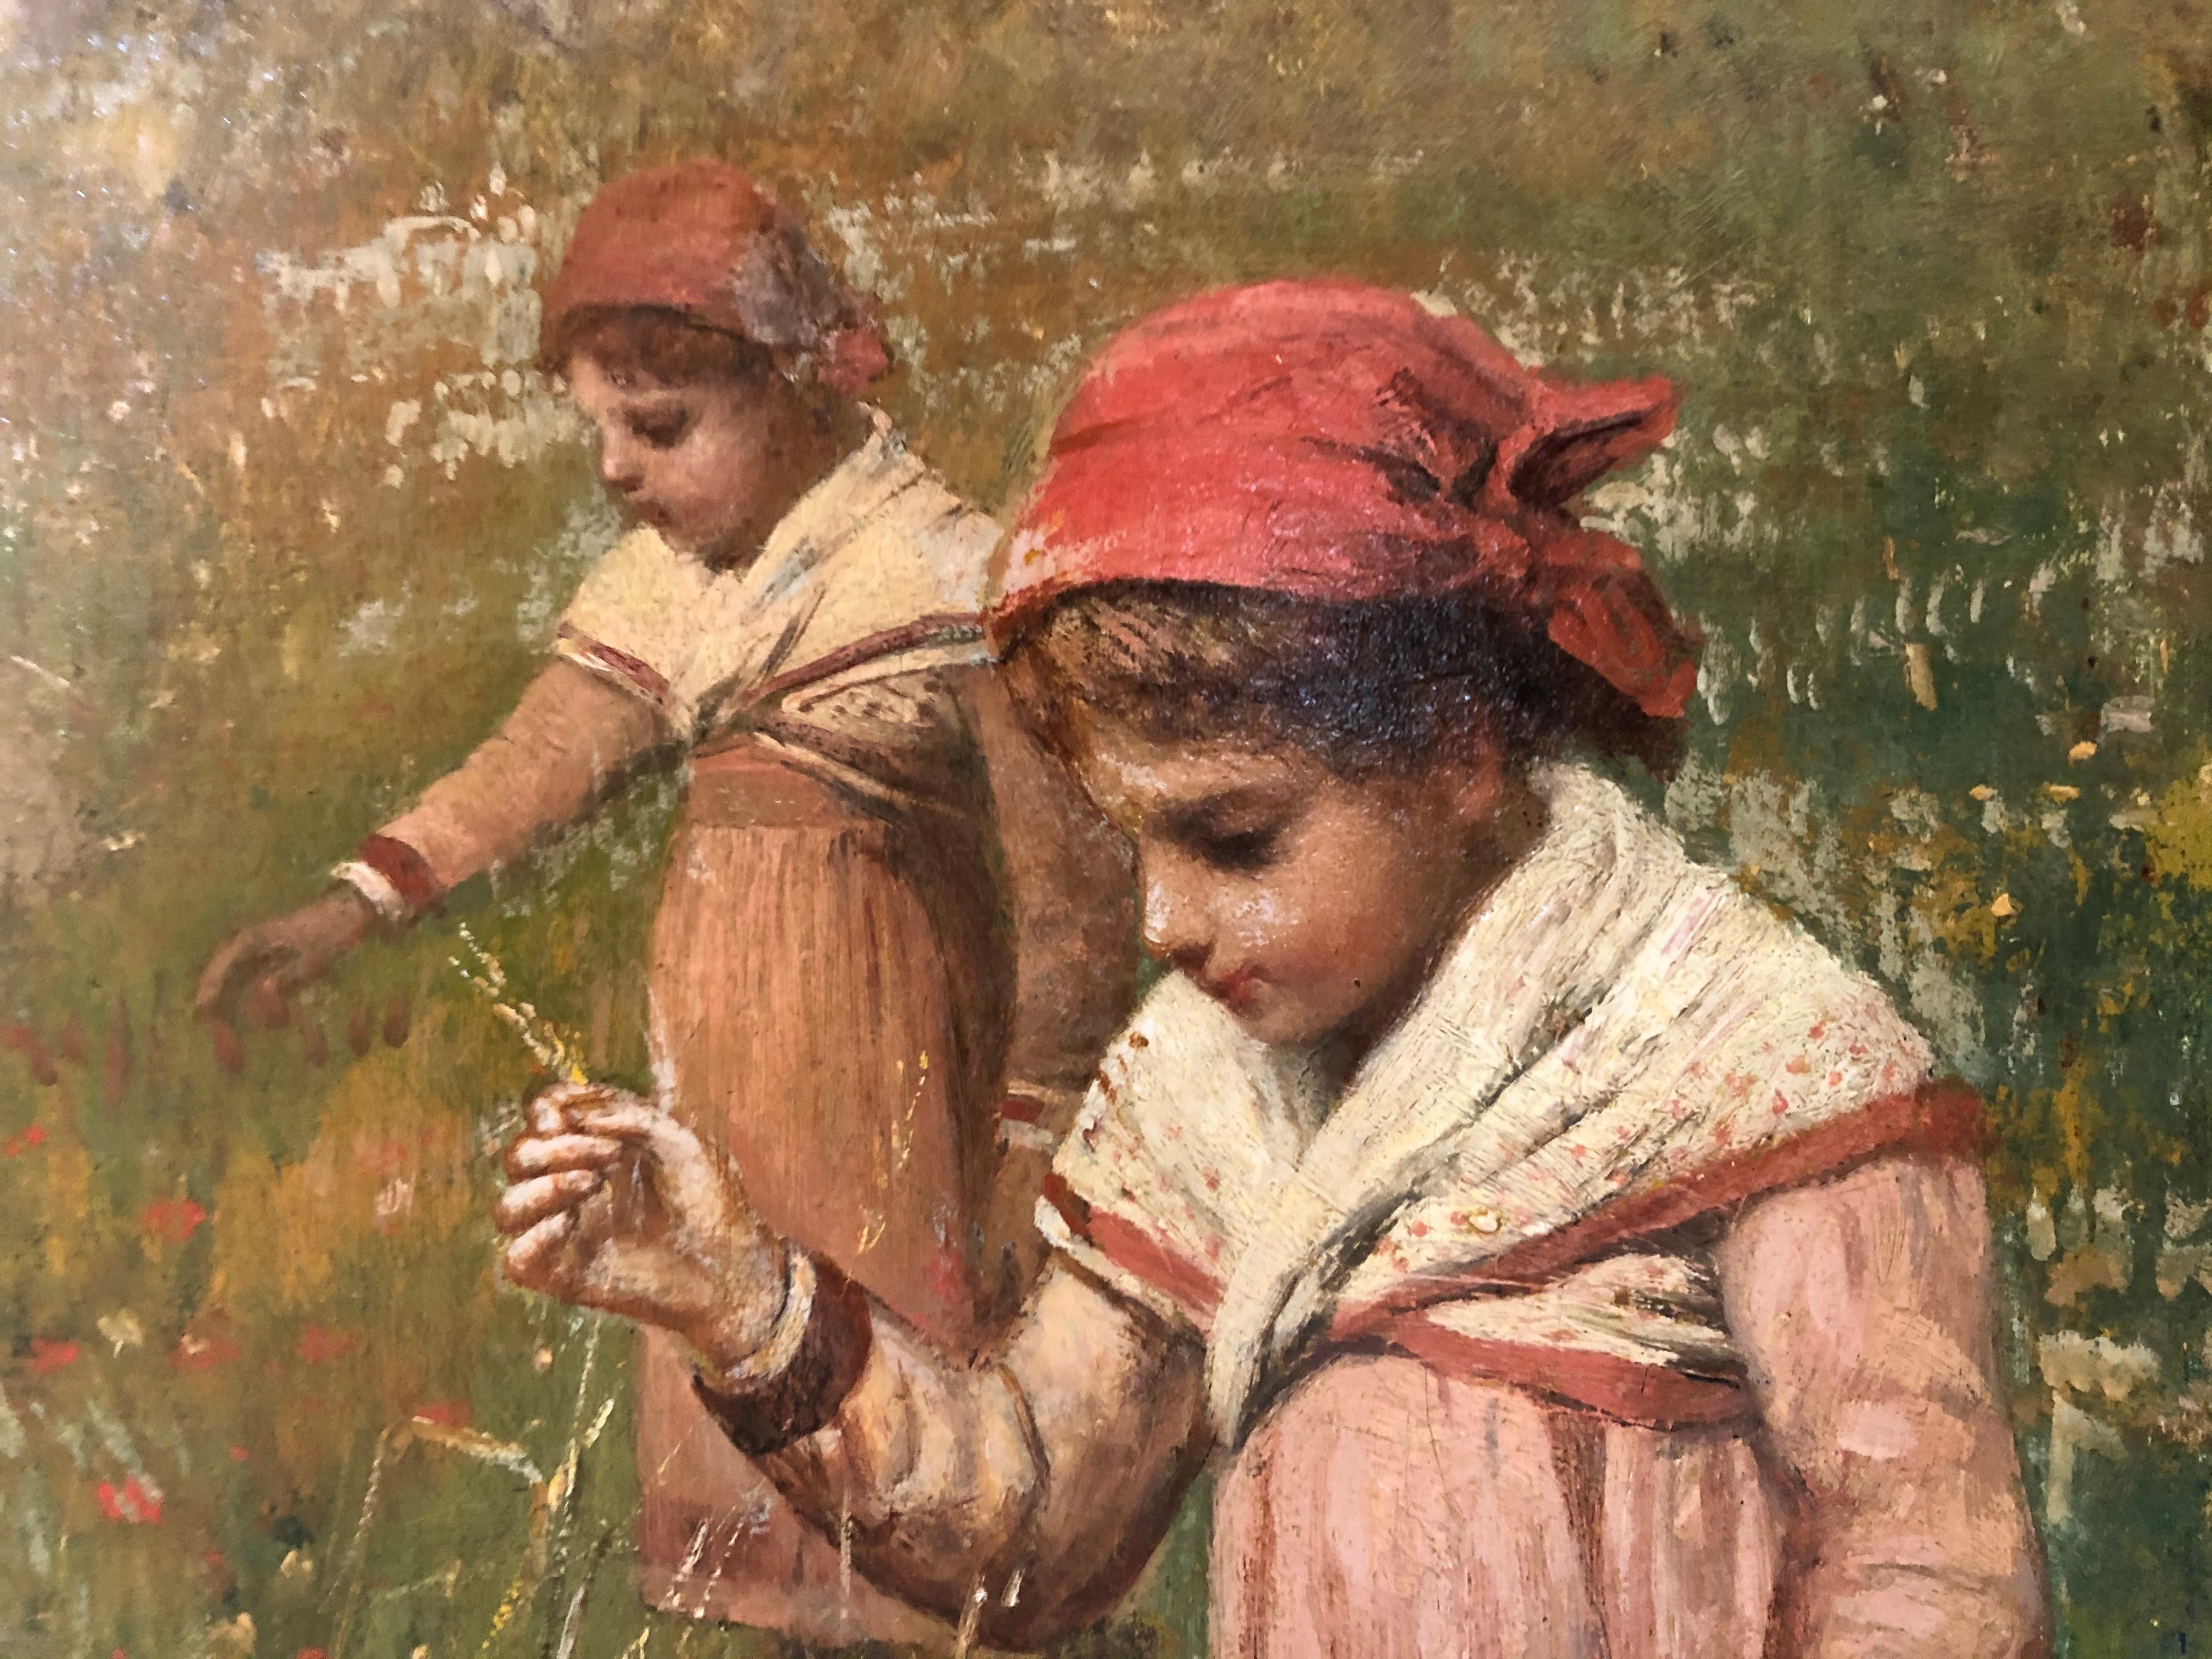 Les jumeaux sur le terrain - Painting de James Wells Champney